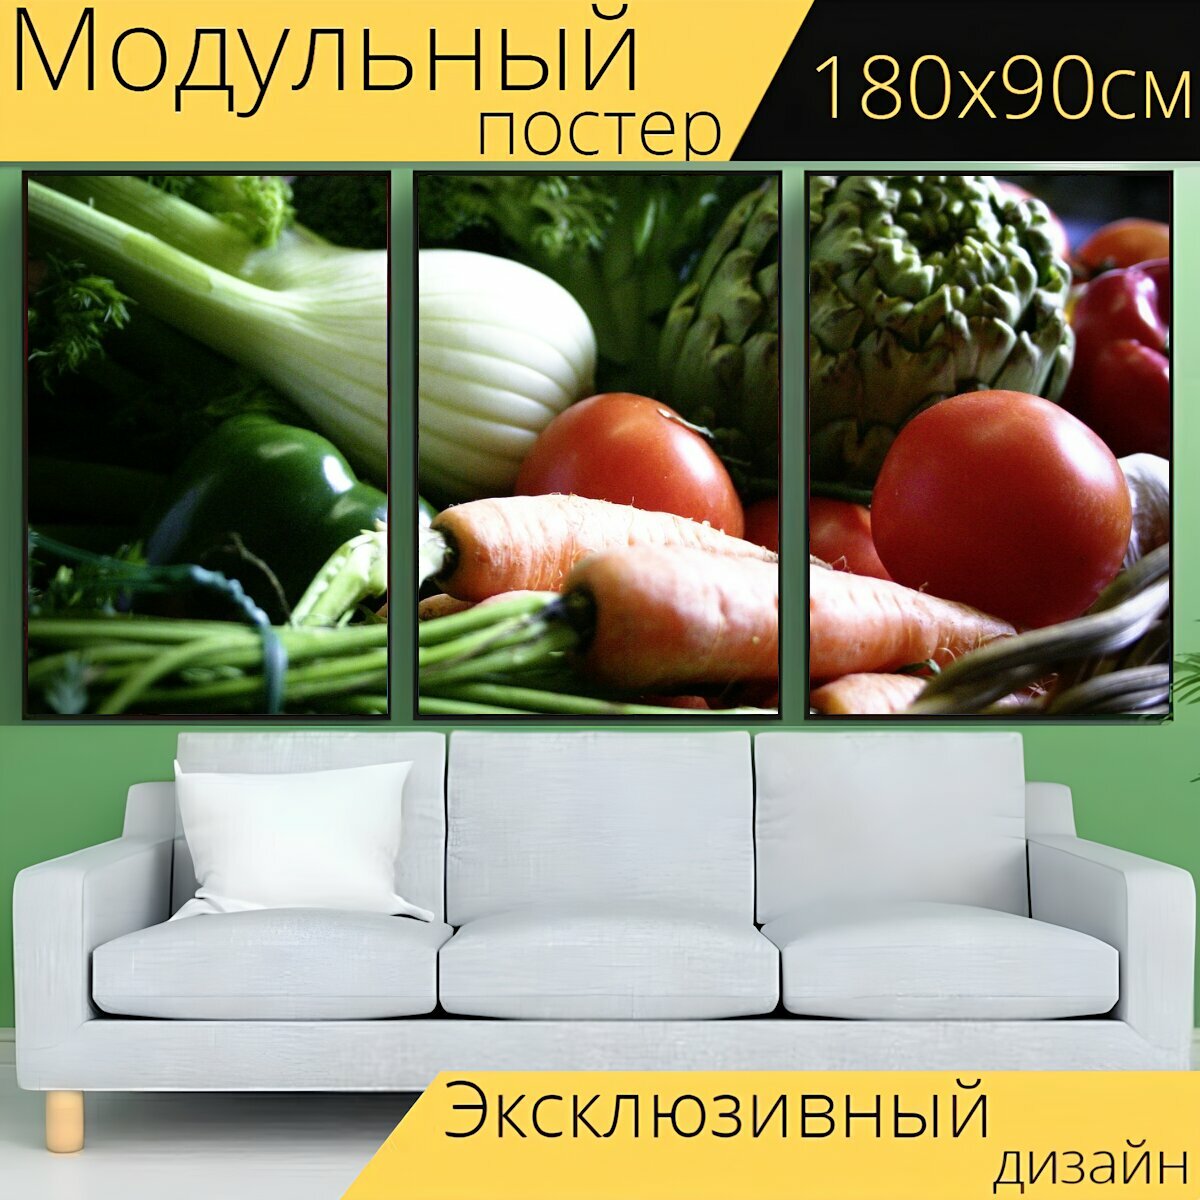 Модульный постер "Овощи, корзина, морковь" 180 x 90 см. для интерьера